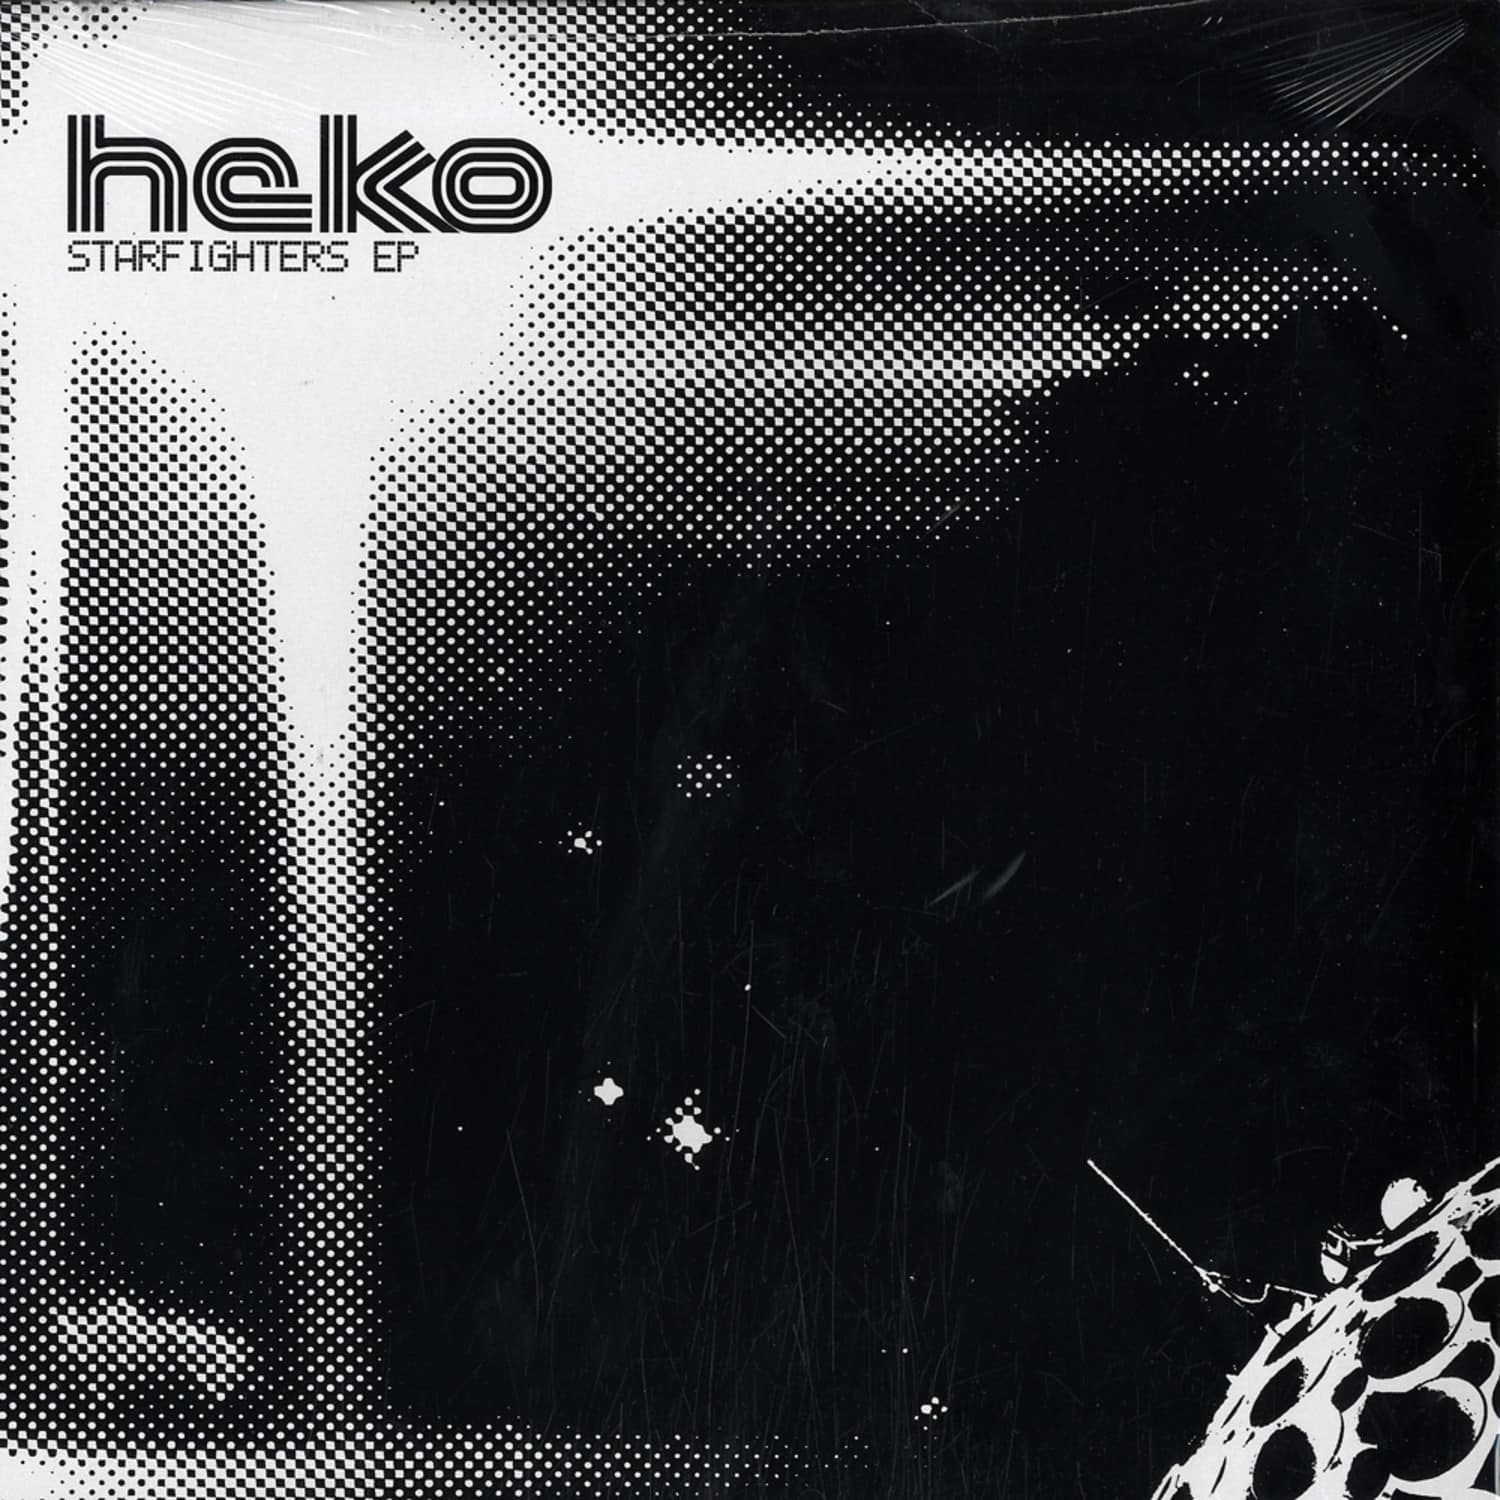 Heko - STARFIGHTERS EP